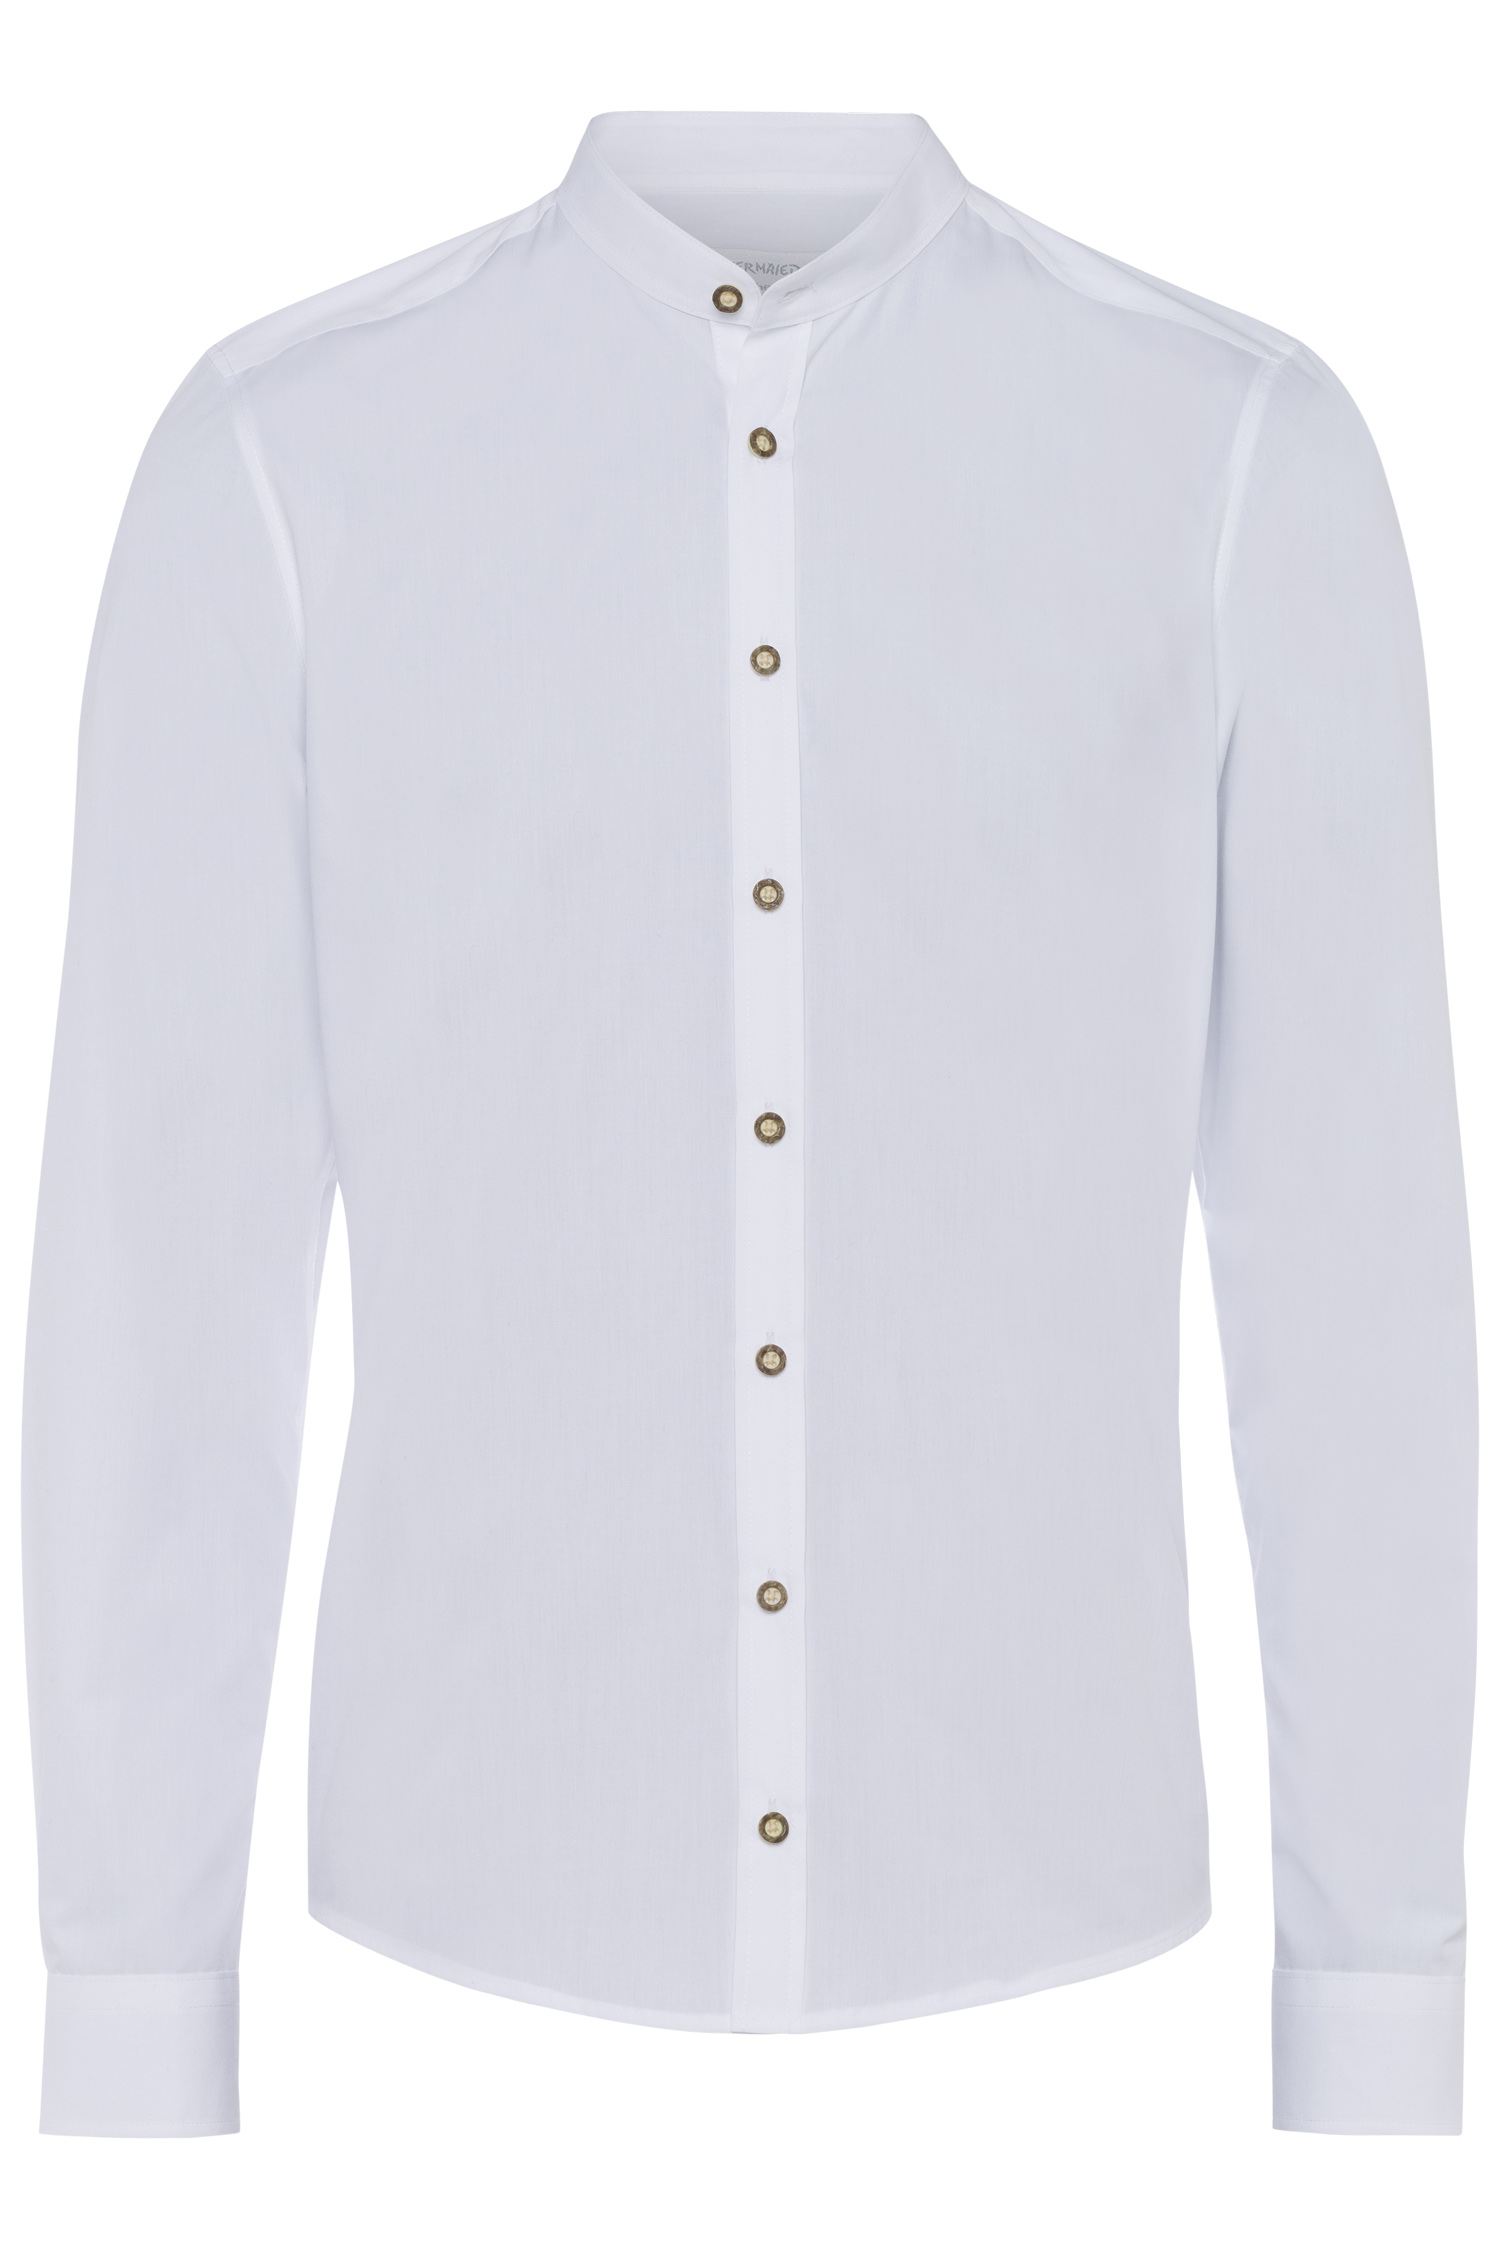 Trachtenhemd Stehkragen modern fit M | 900 uni weiß